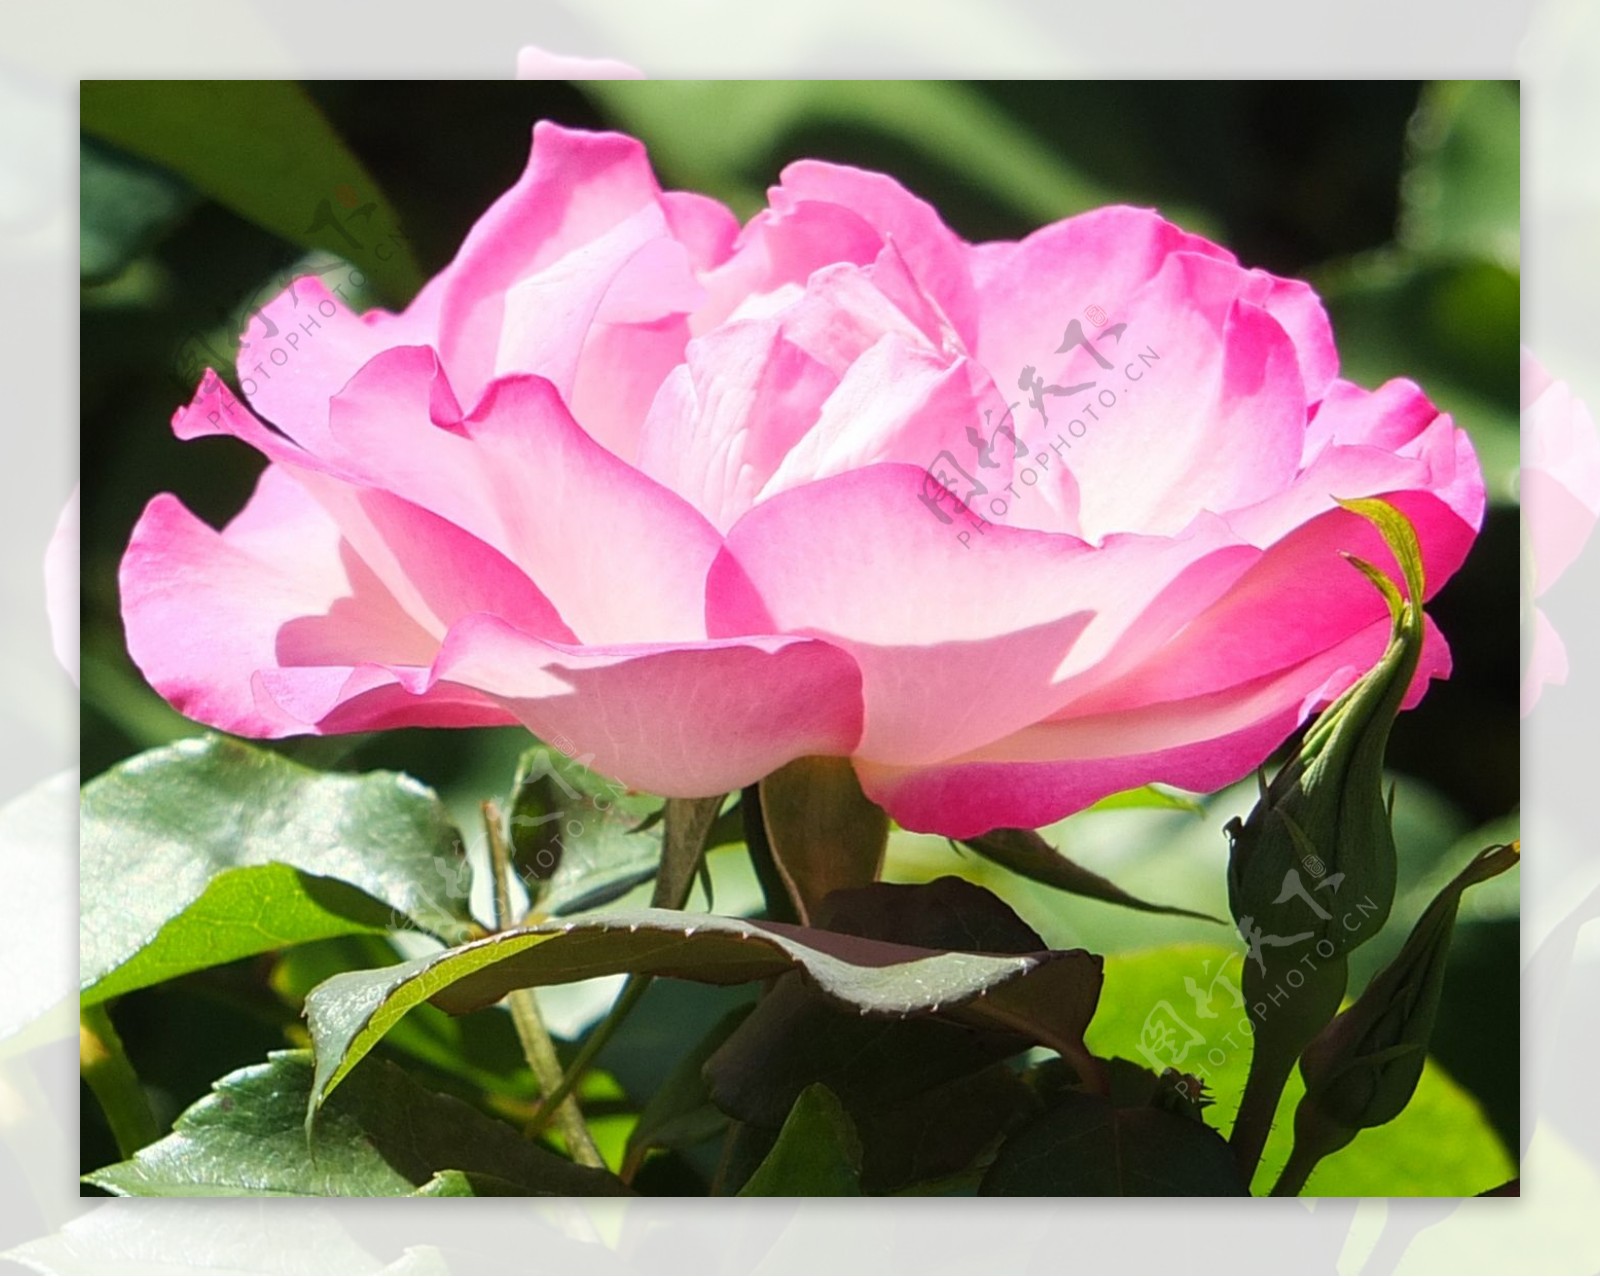 位图植物摄影写实花卉花朵玫瑰花免费素材